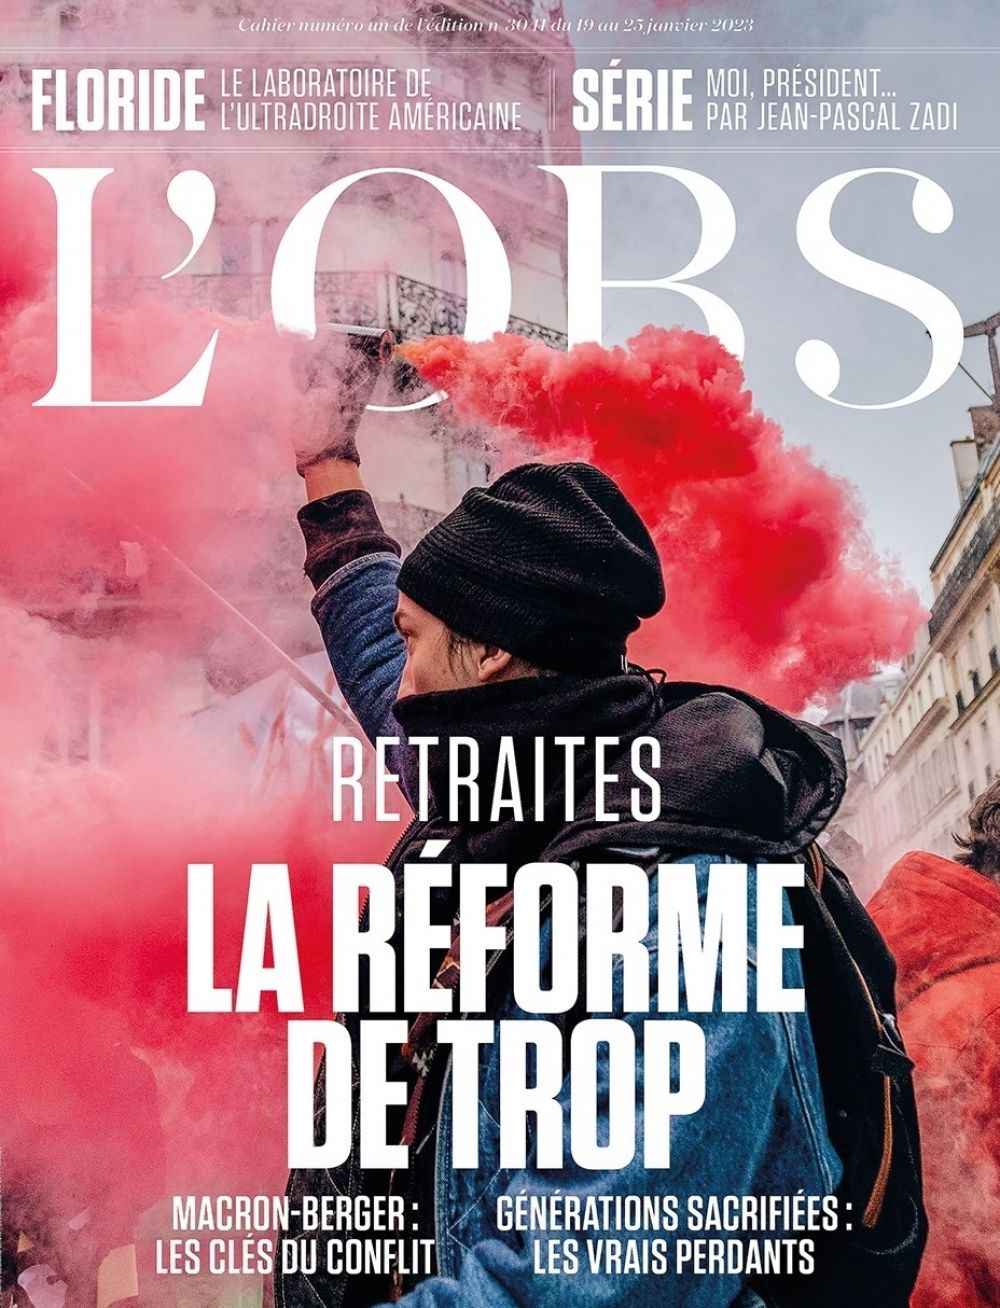 Обложка французского журнала L’Obs посвящена протестам против пенсионной реформы. Французы вышли на улицы против повышения пенсионного возраста с 62 до 64 лет и отмены особых пенсионных режимов для работников некоторых сфер.